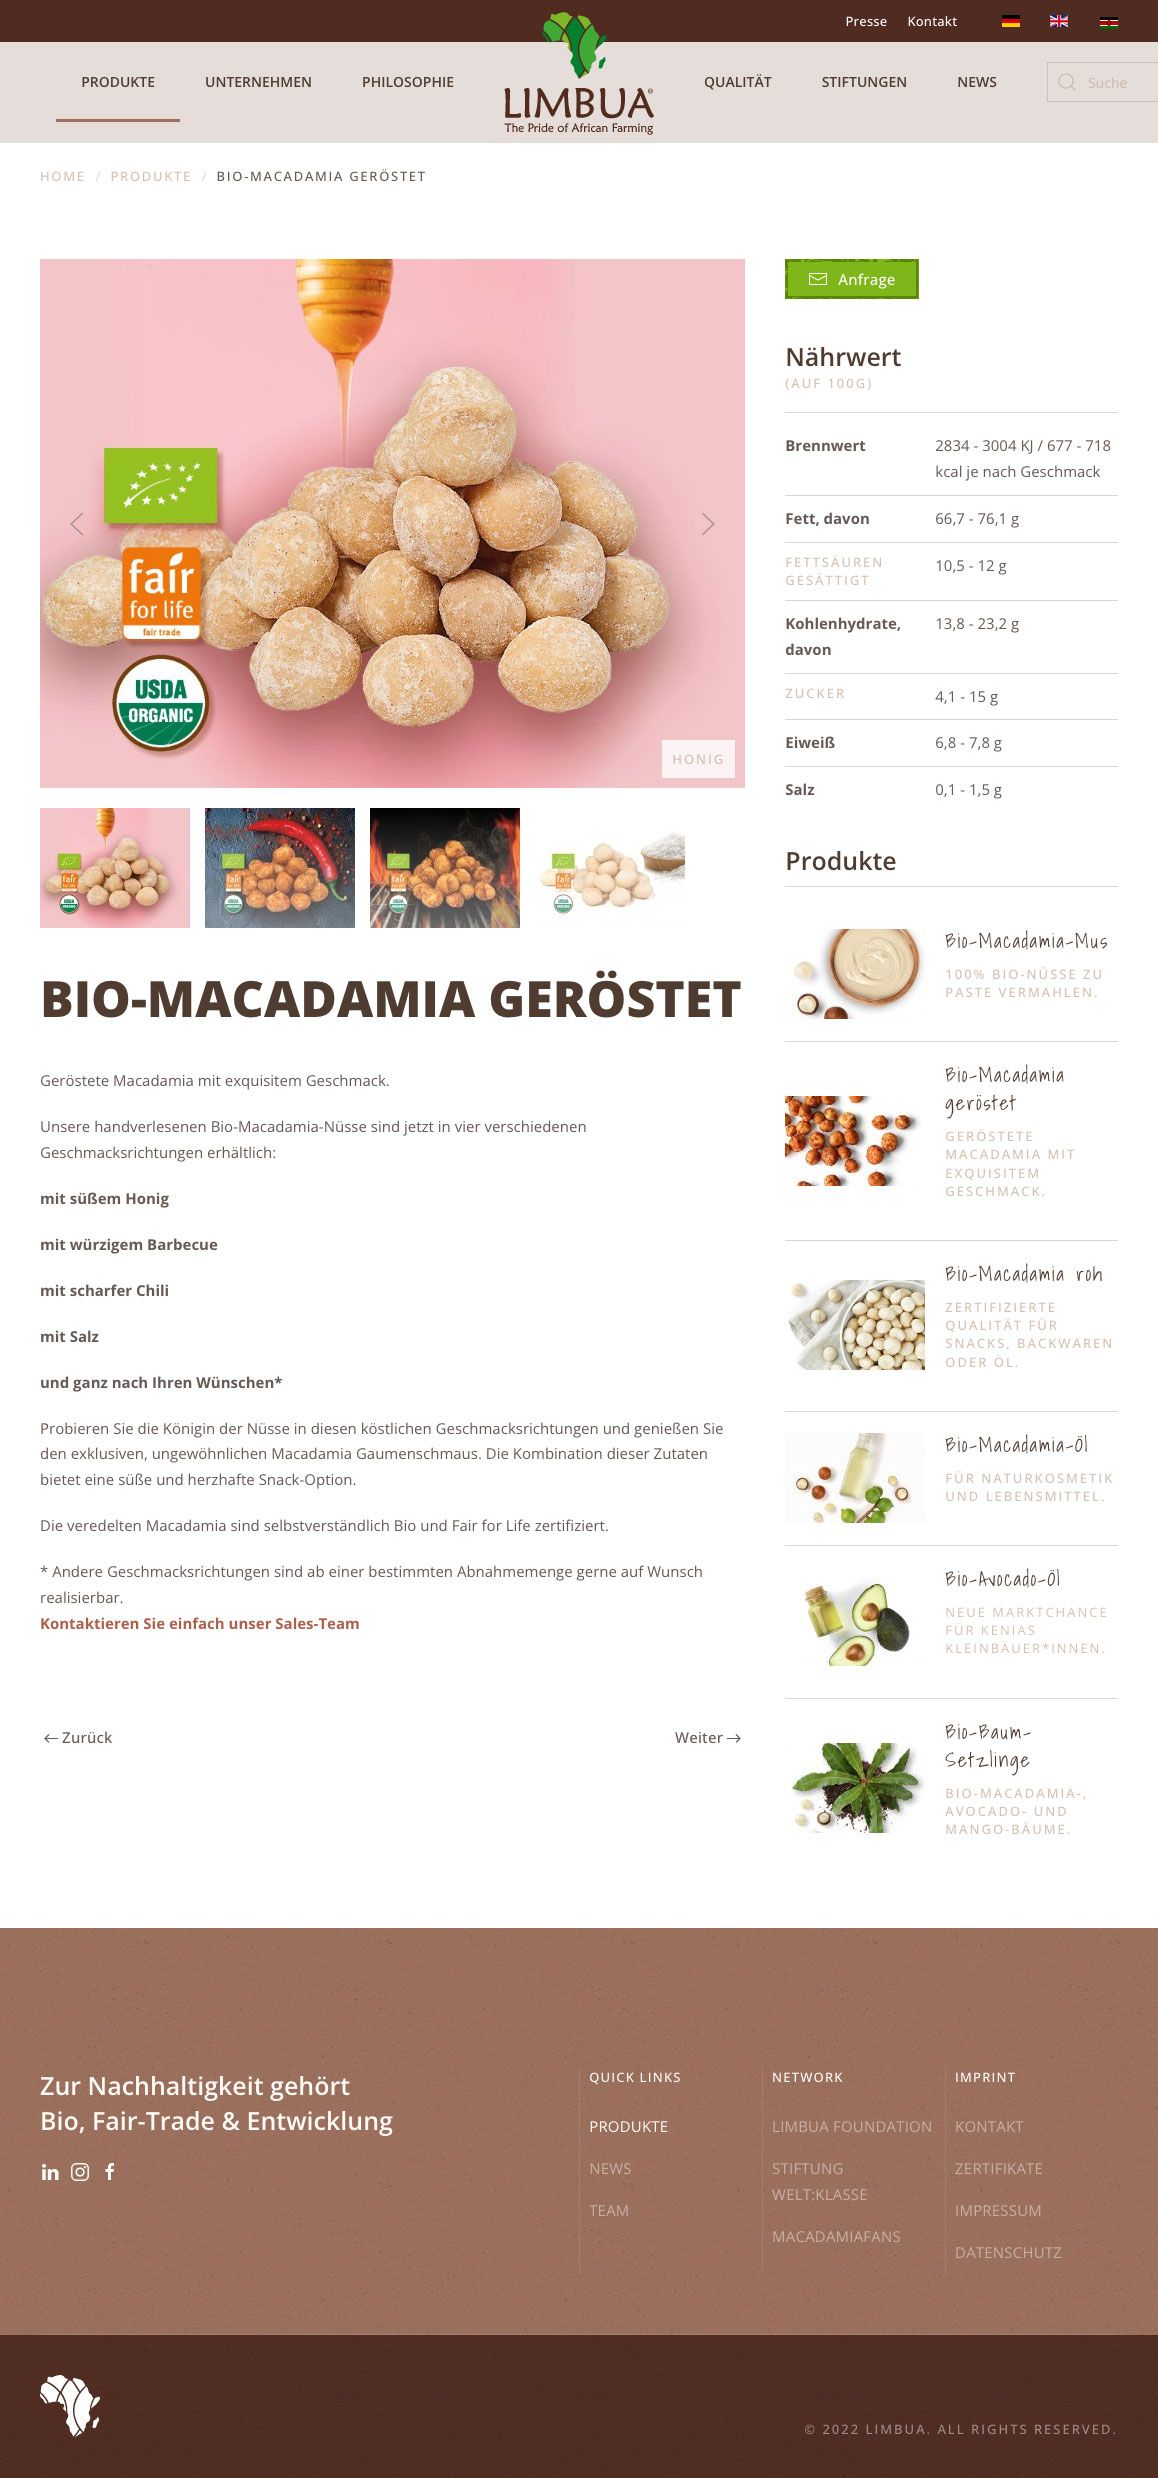 Webdesign Produkt-Einzelseite "Bio-Macadamia geröstet"